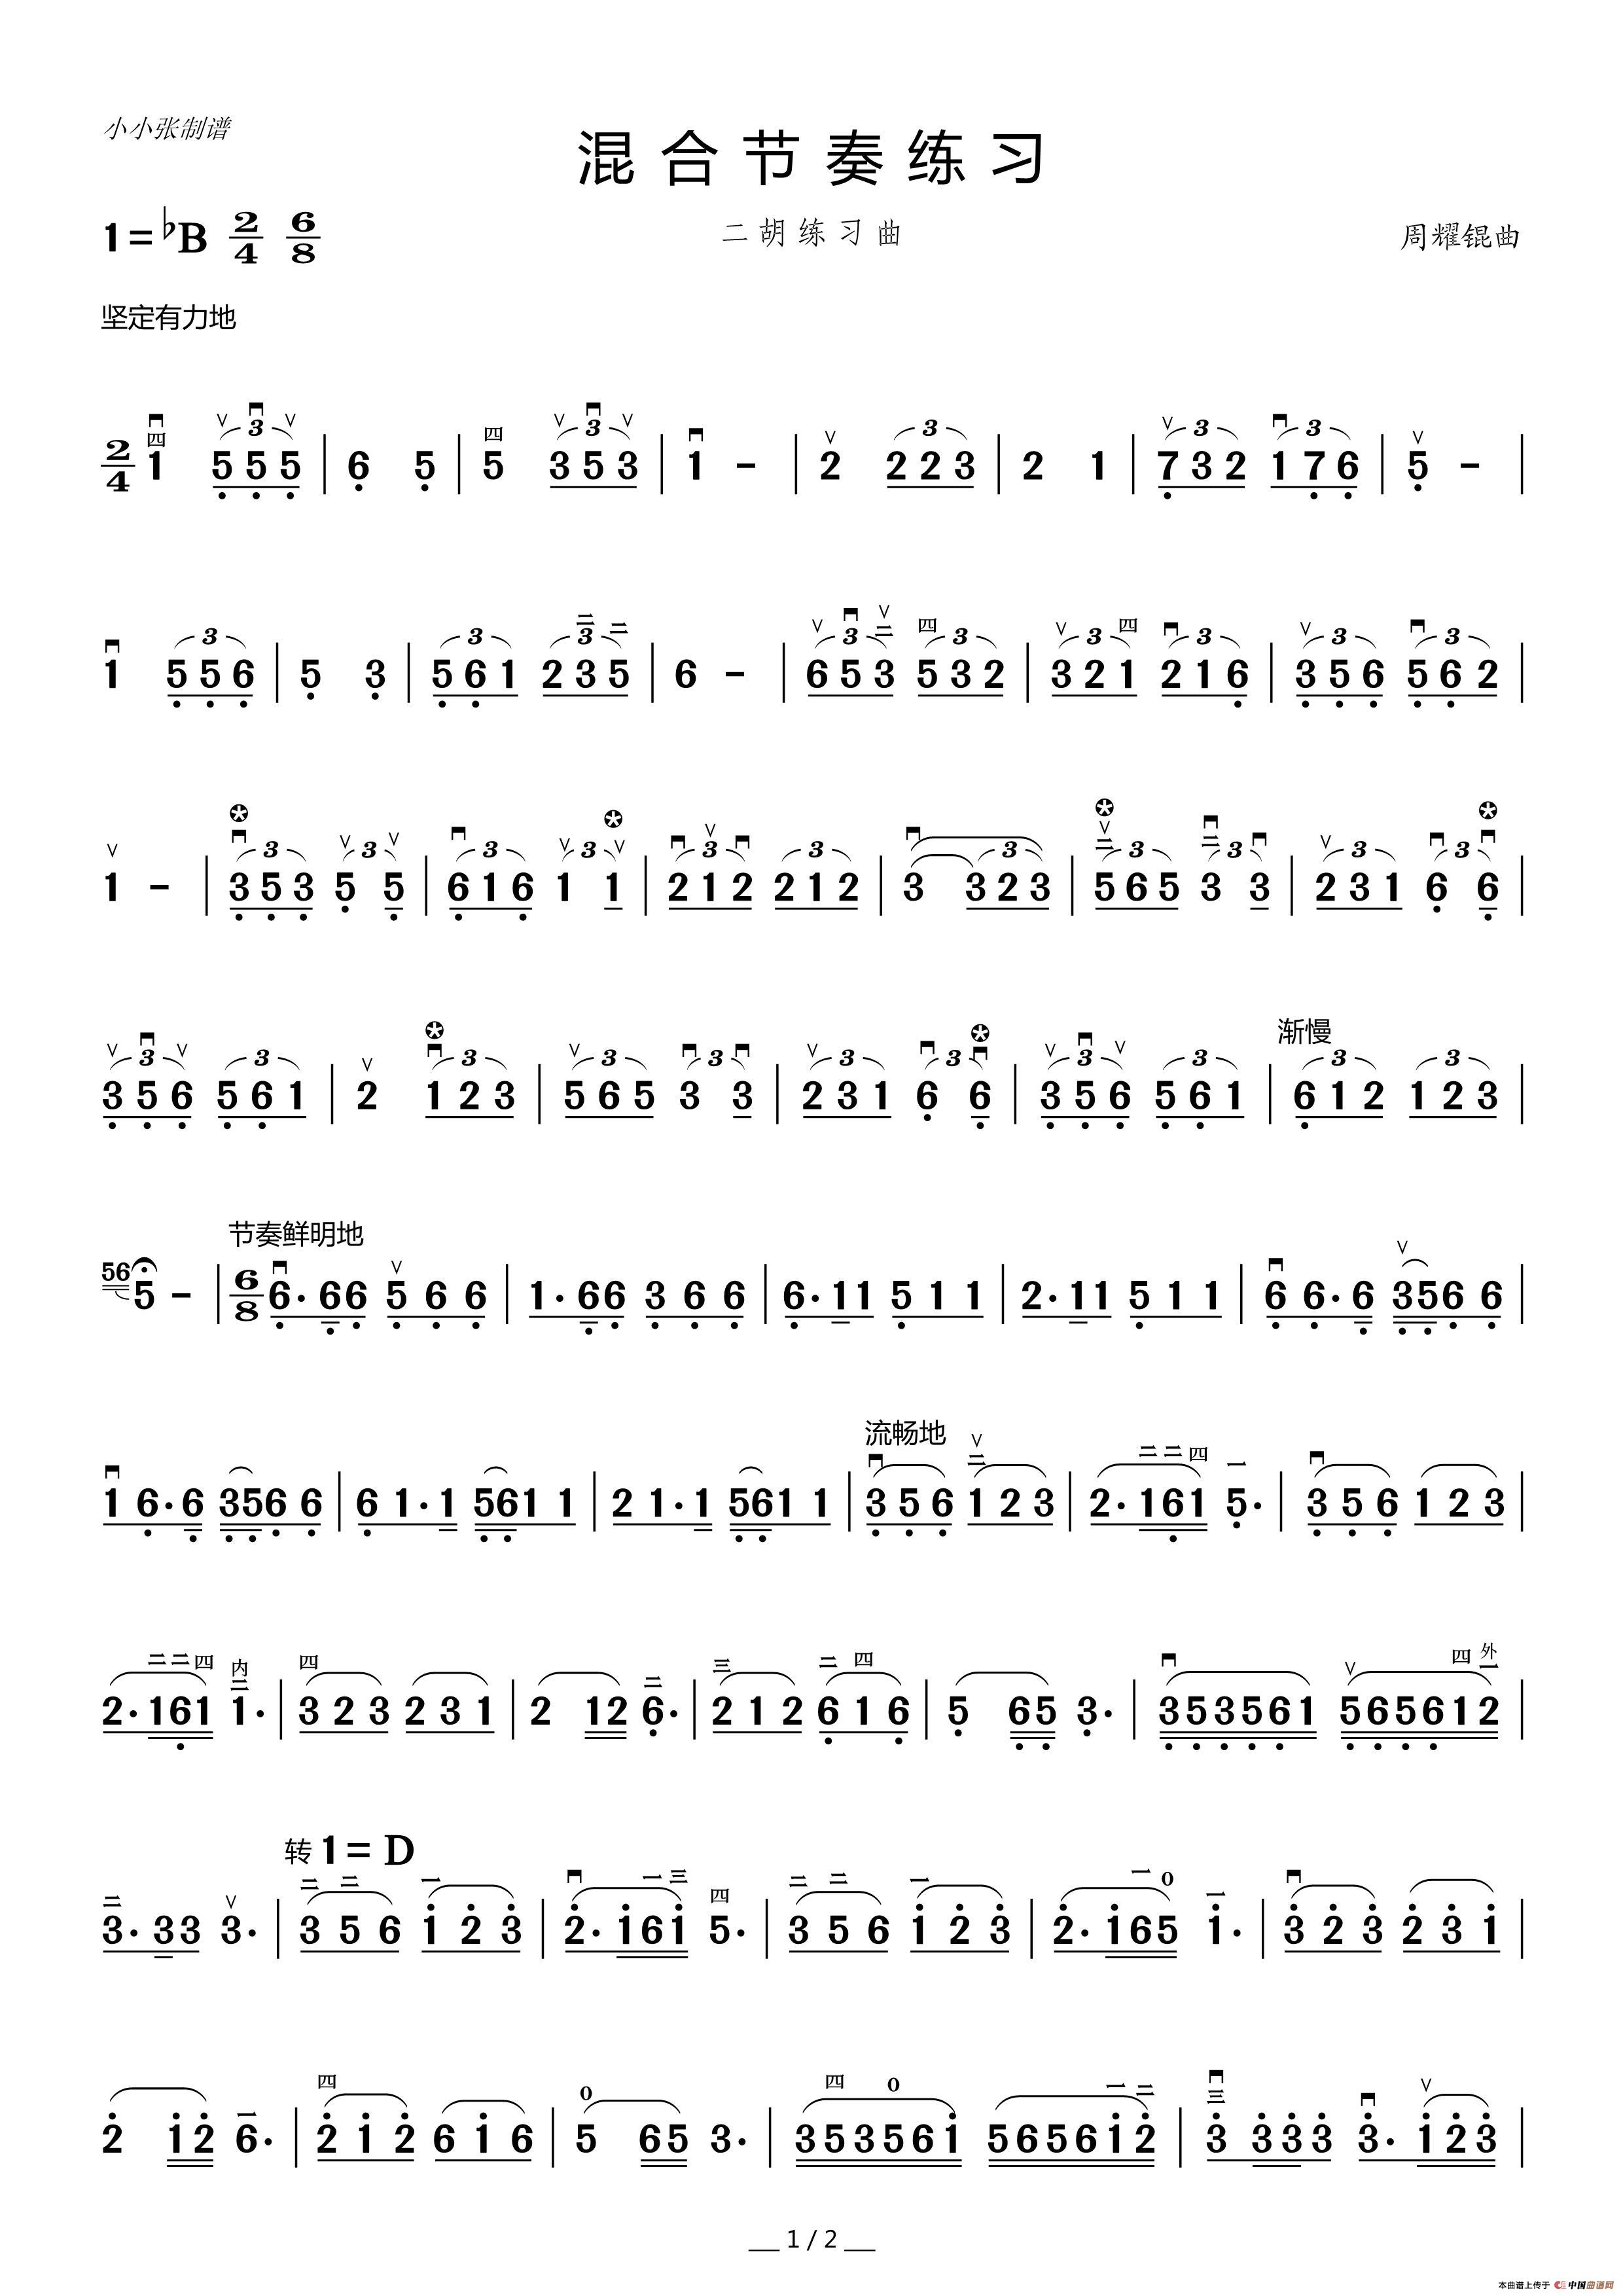 二胡混合节奏练习曲(周耀锟)(小小张制谱)(1)_原文件名:混合节奏练习